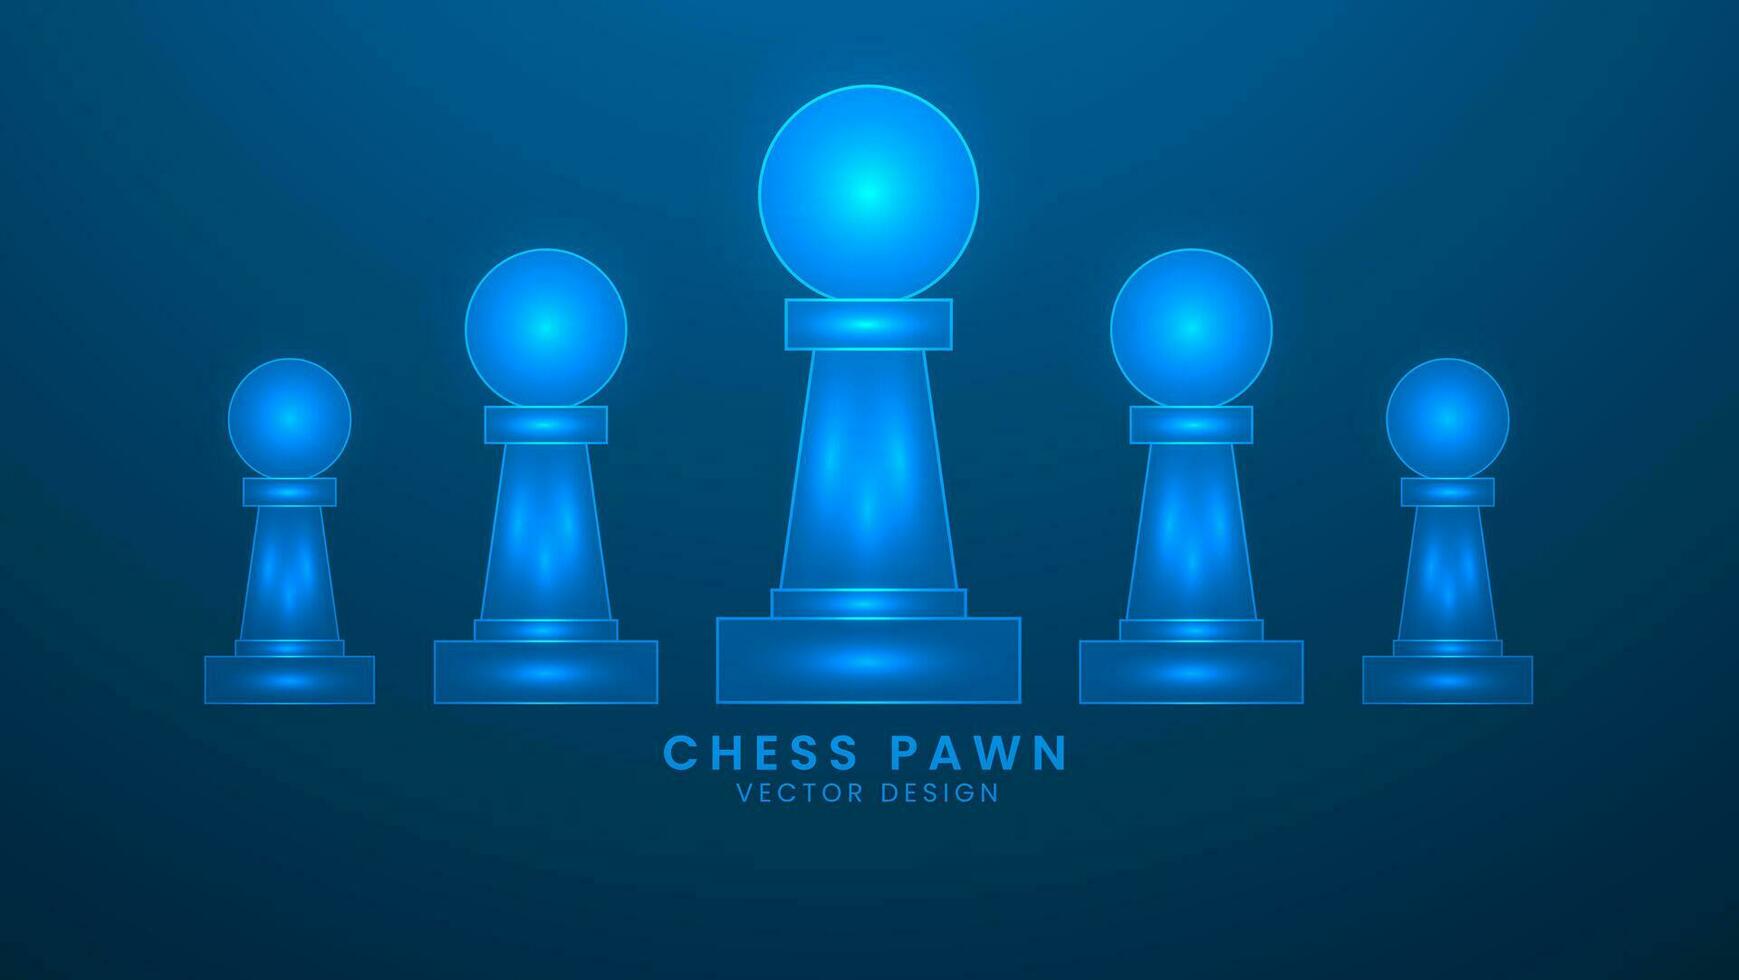 Schach verpfänden. strategisch Spiel oder Hobby. Vektor Illustration mit Licht bewirken und Neon-